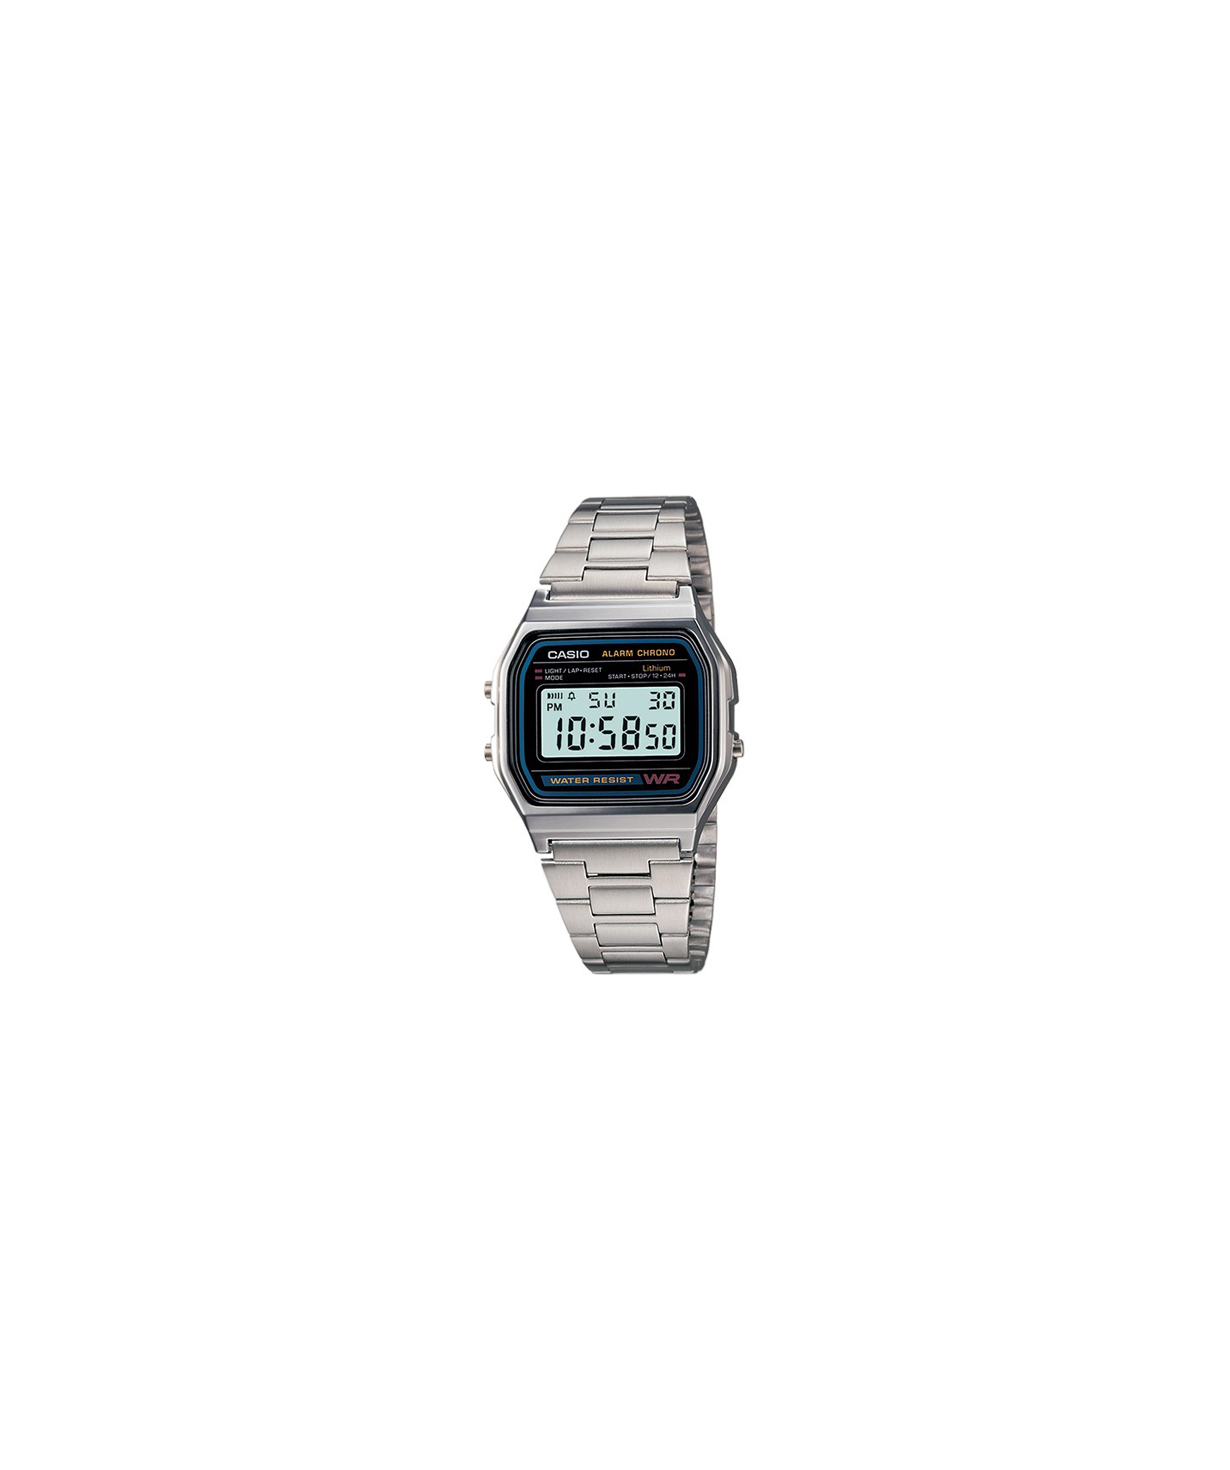 Ժամացույց  «Casio» ձեռքի  A158WA-1DF